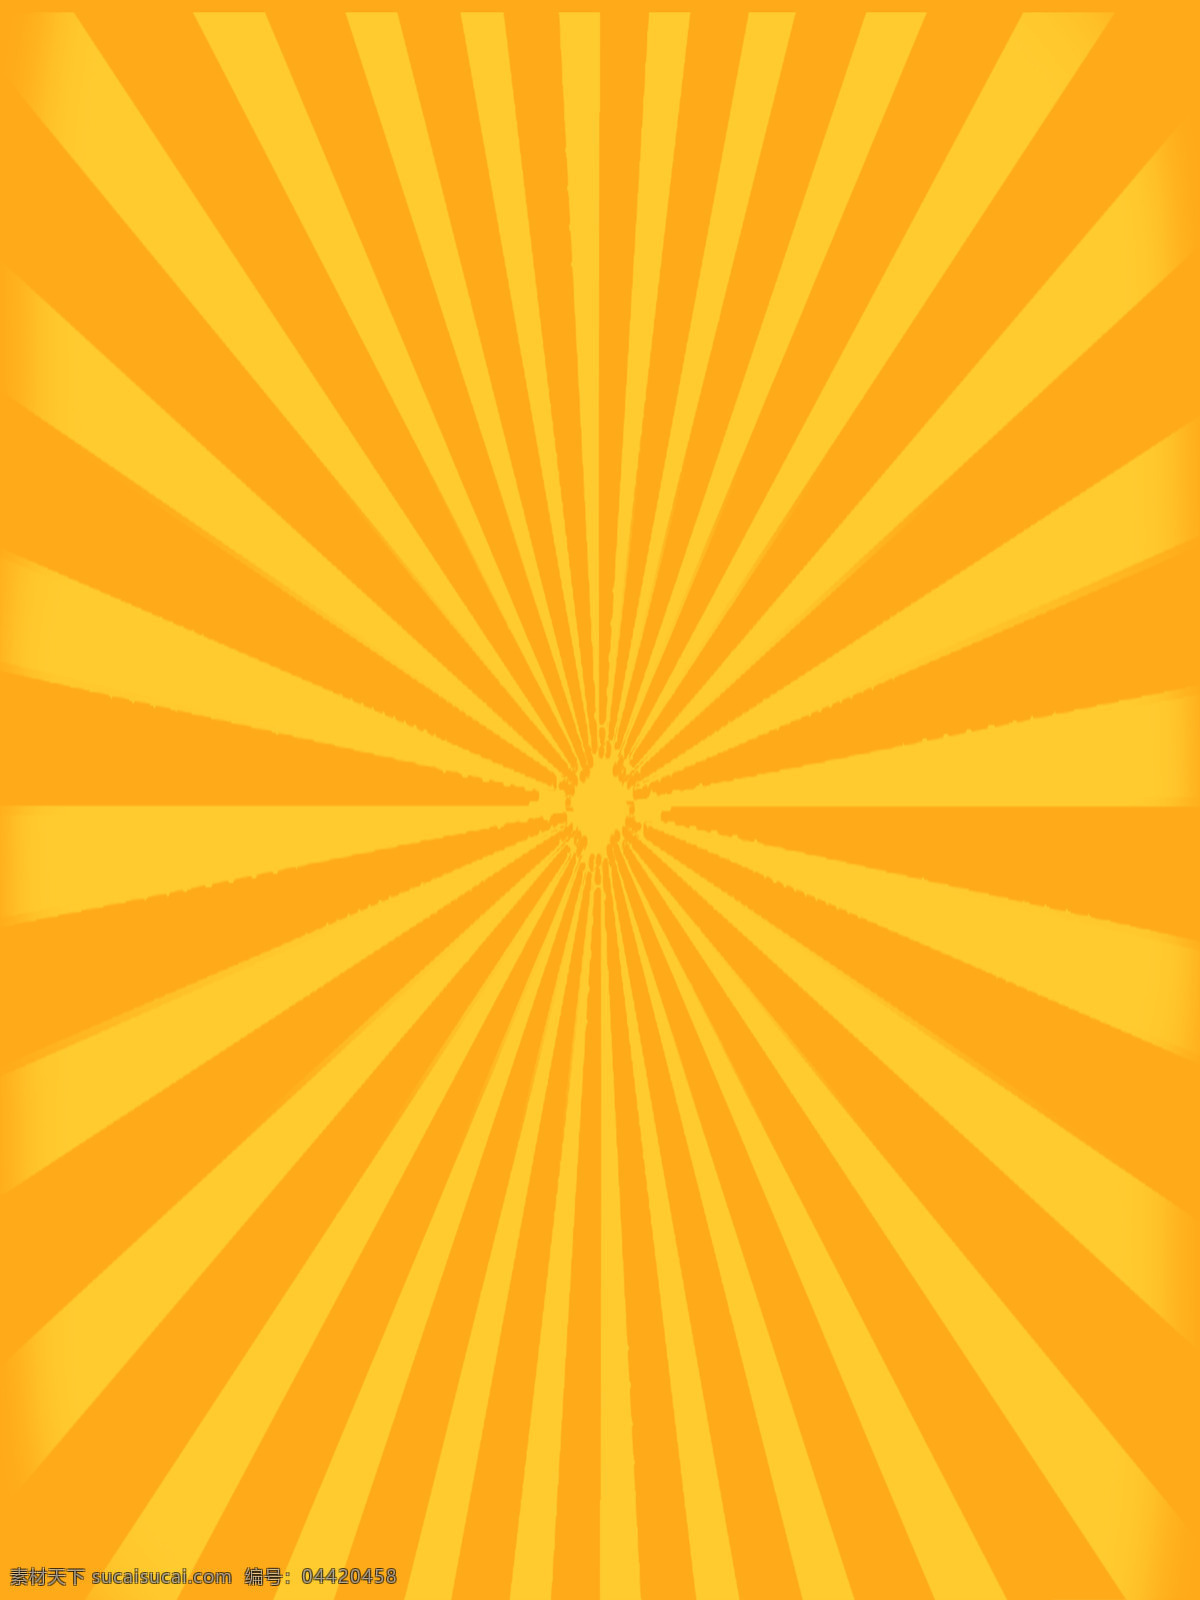 黄色 放射 光线 背景 黄色背景 放射光线 分层 设计素材